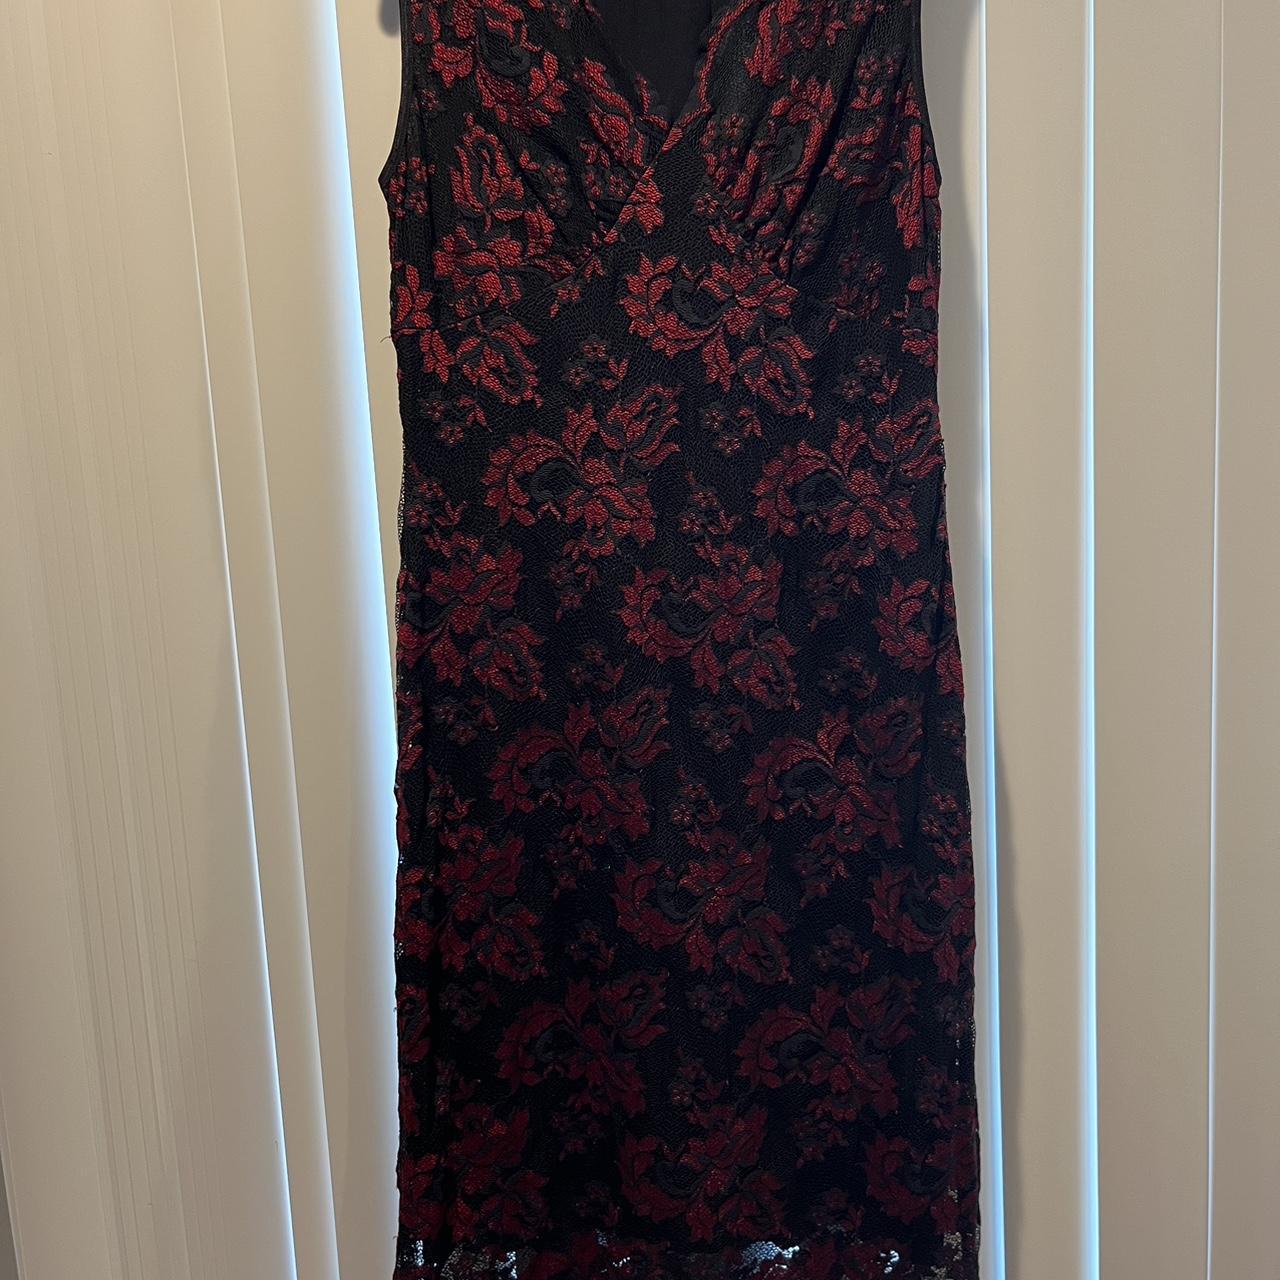 Karen Kane lifestyle black and red lace medium dress - Depop